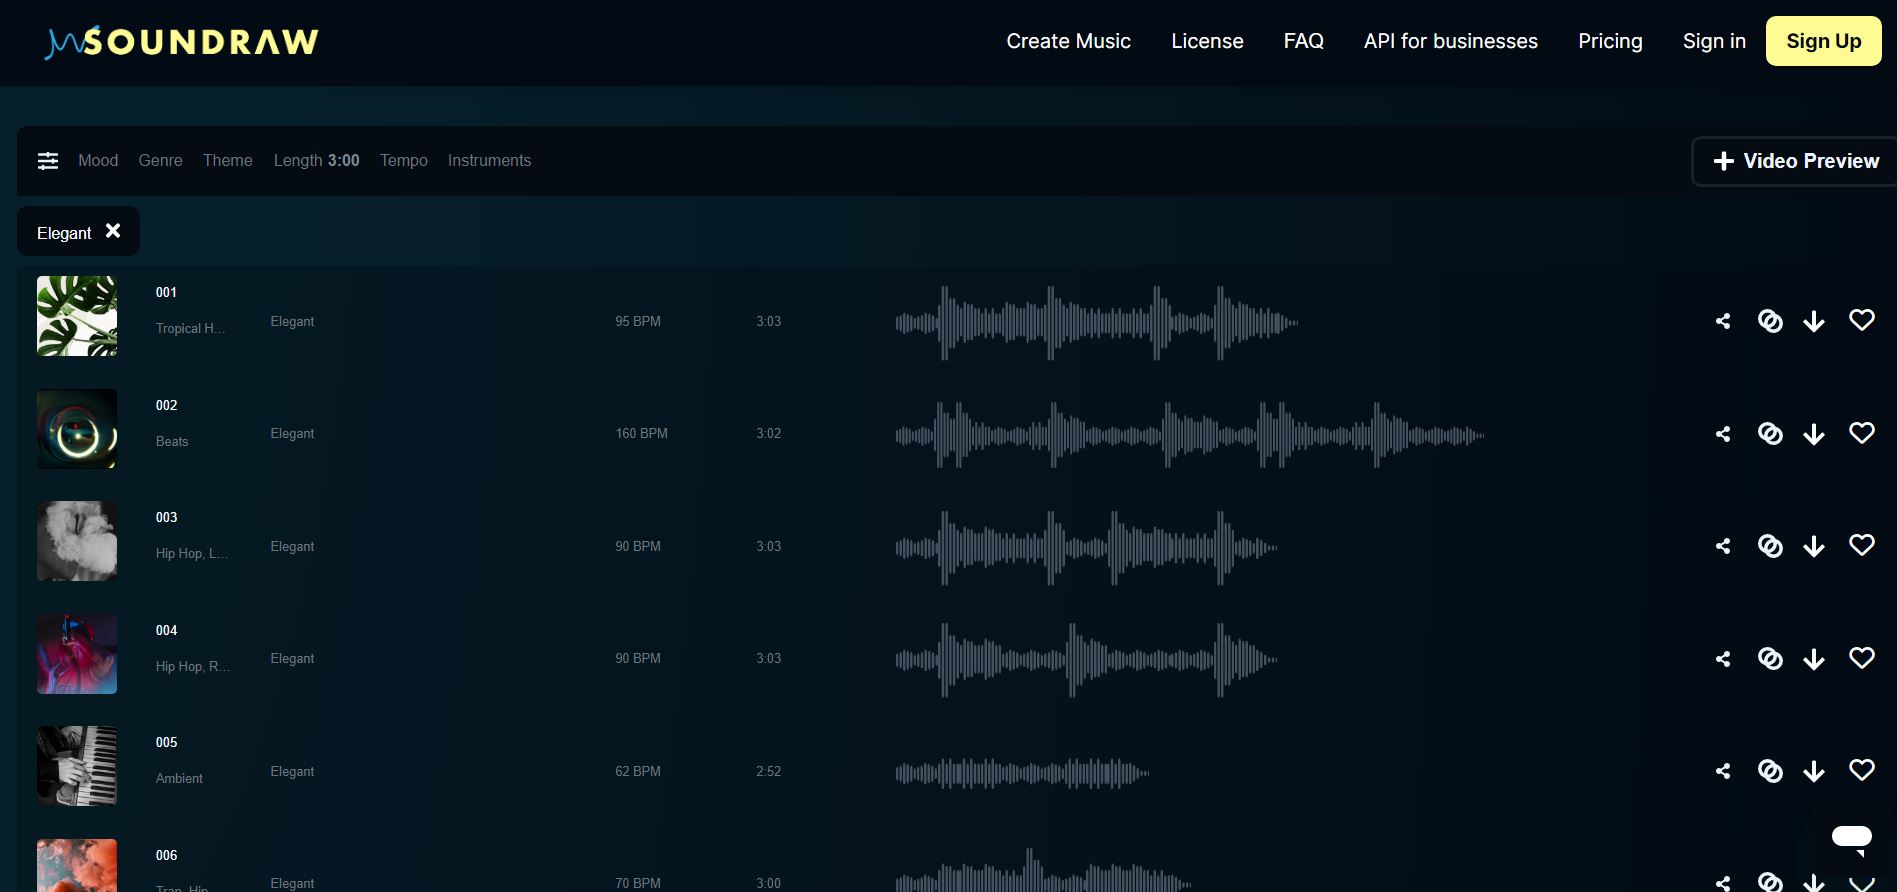 Soundraw - Musiques créées - IA pour générer de la musique